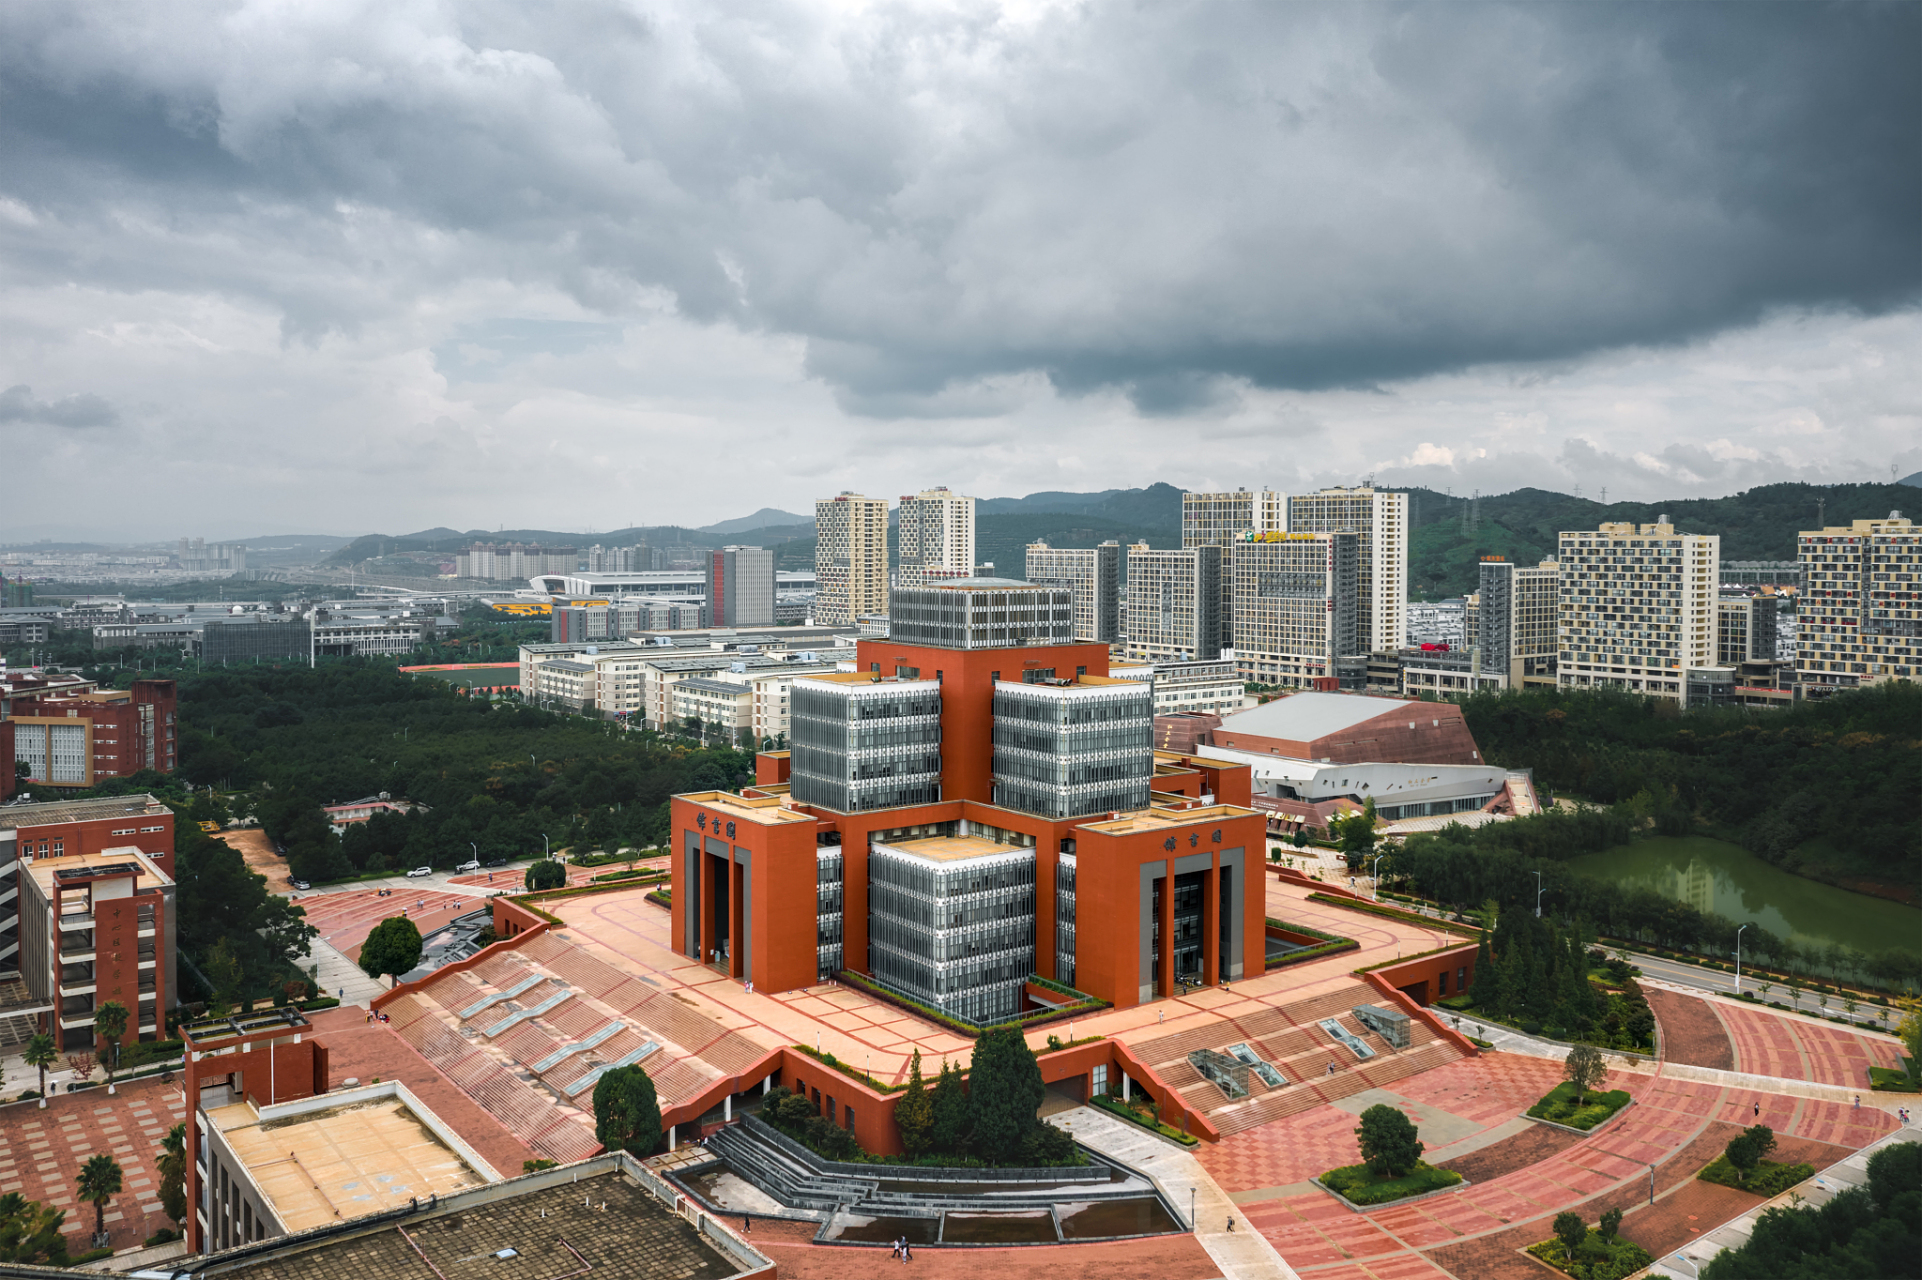 昆明理工大学隶属于云南省,是冶金行业的龙头院校,该校前身之一